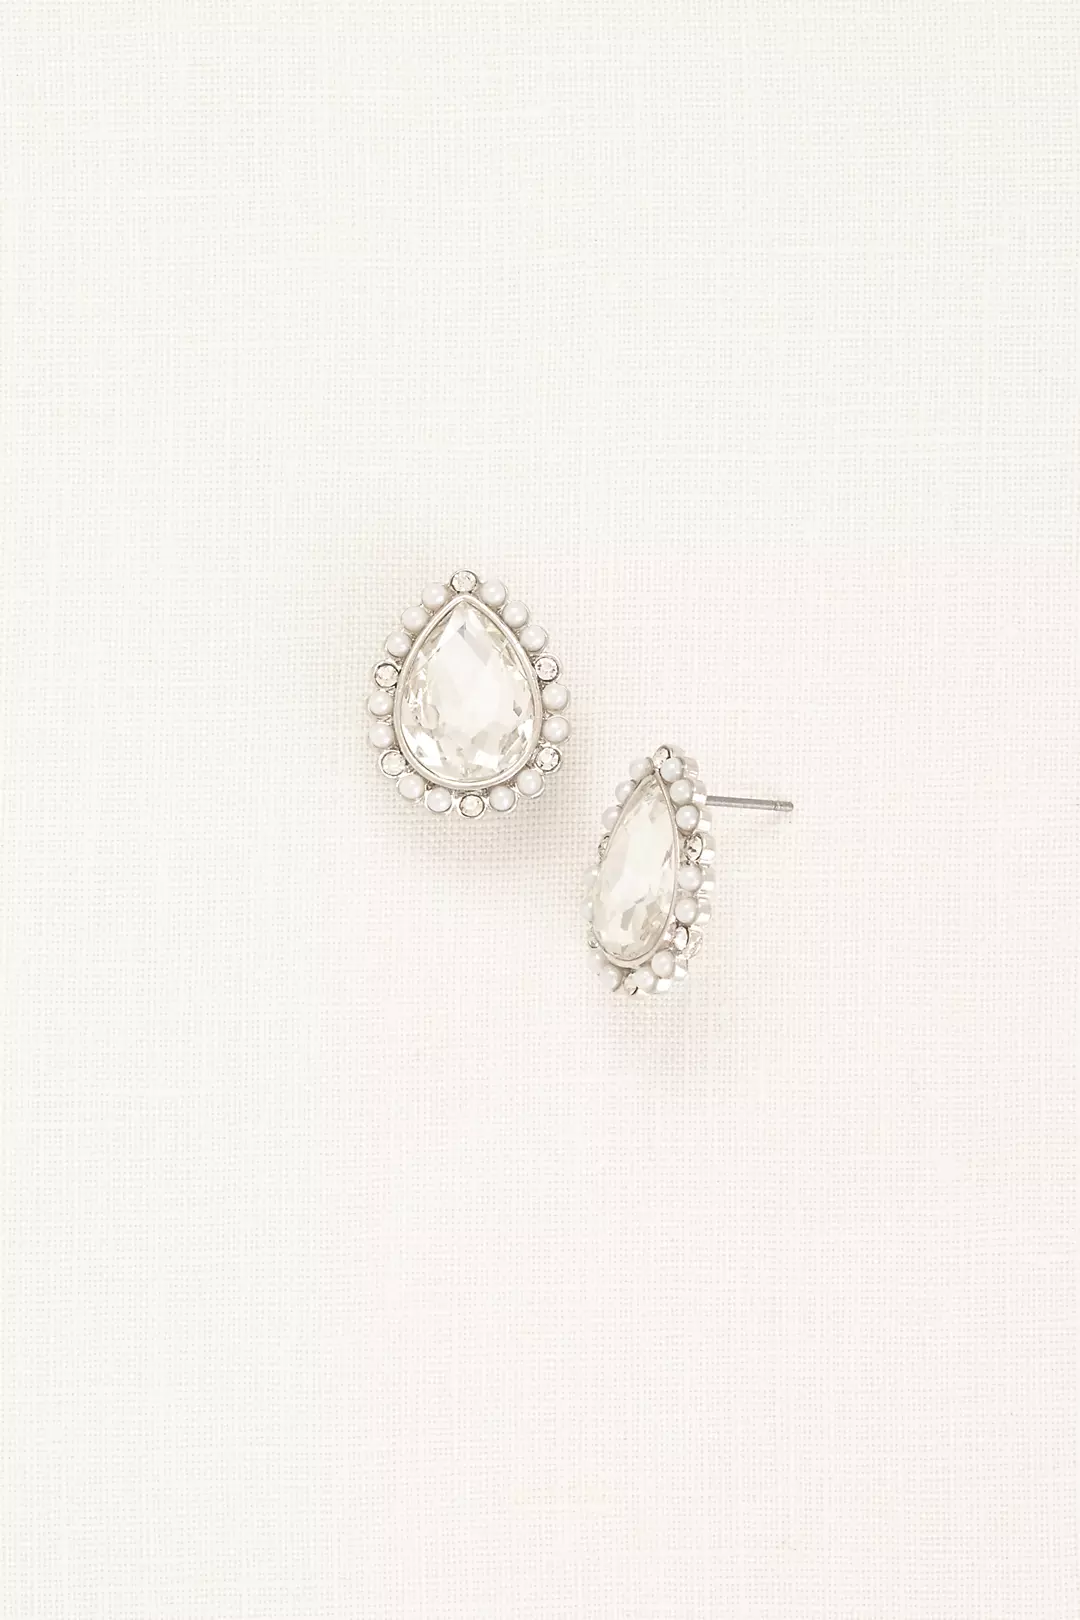 Pearl Teardrop Stud Earrings with Crystals Image 2